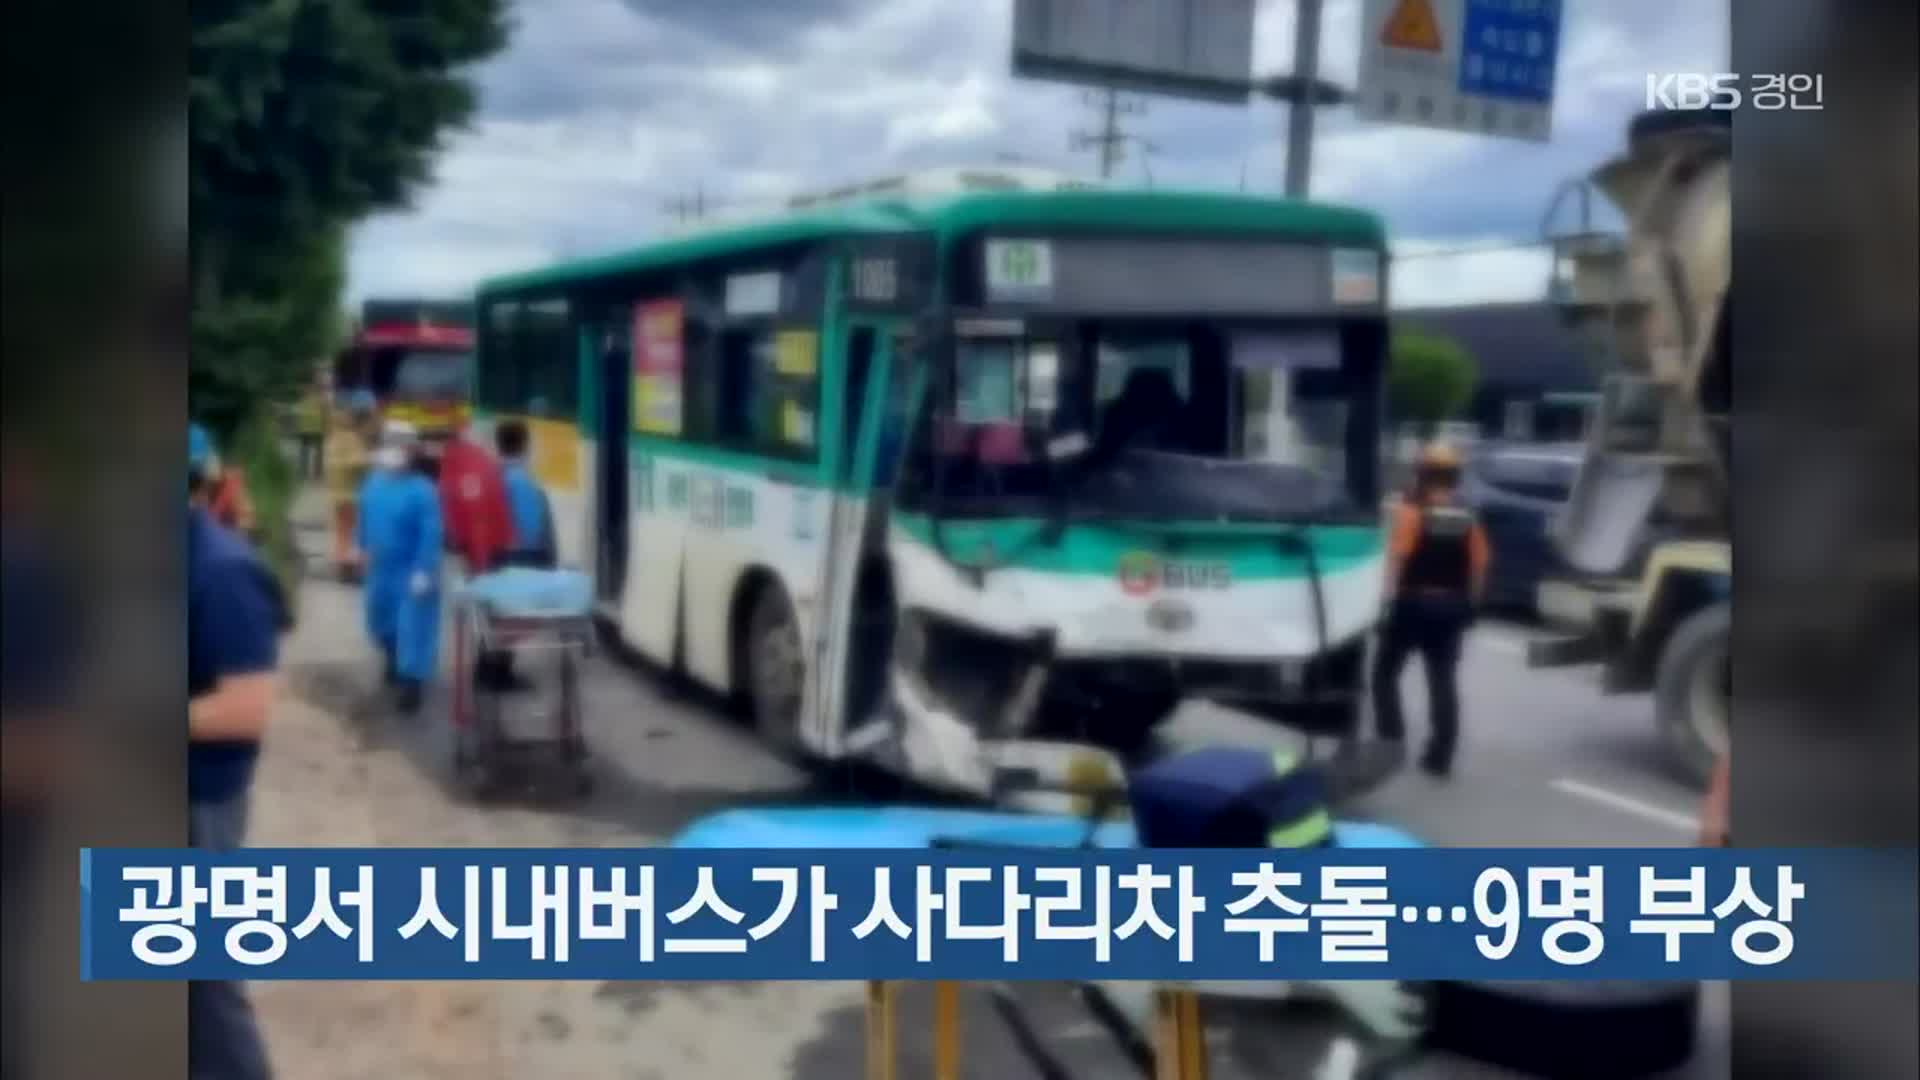 광명서 시내버스가 사다리차 추돌…9명 부상